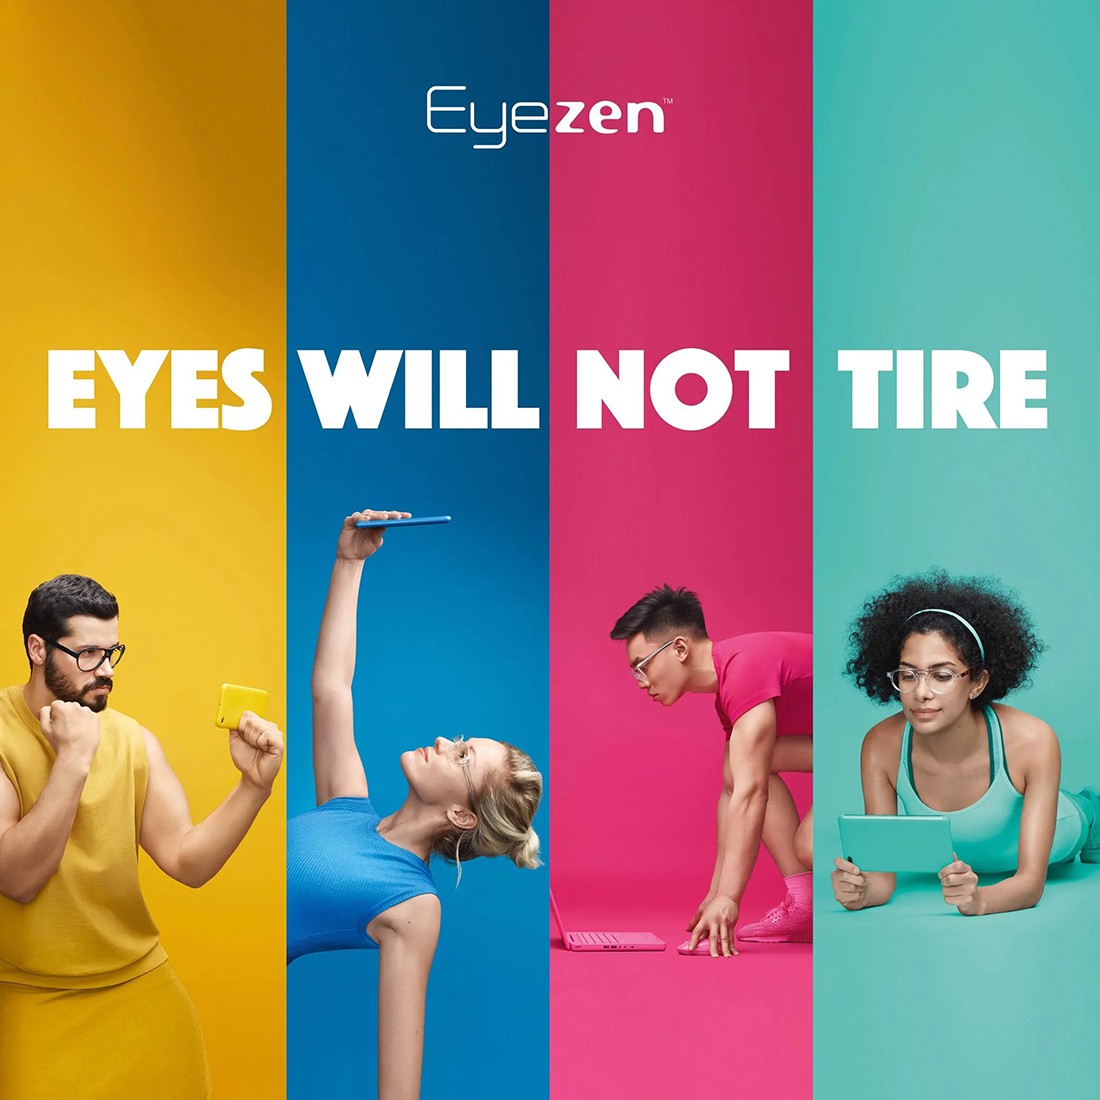 Tròng kính Essilor EYEZEN Crizal Prevencia công nghệ mới hỗ trợ điều tiết giảm mỏi mắt, giúp thư giãn bảo vệ mắt khi ngồi máy tính điện thoại ,tối ưu hoá thị lực theo độ tuổi, chống ánh sáng xanh (1 cặp) có sẵn 3 chiết suất